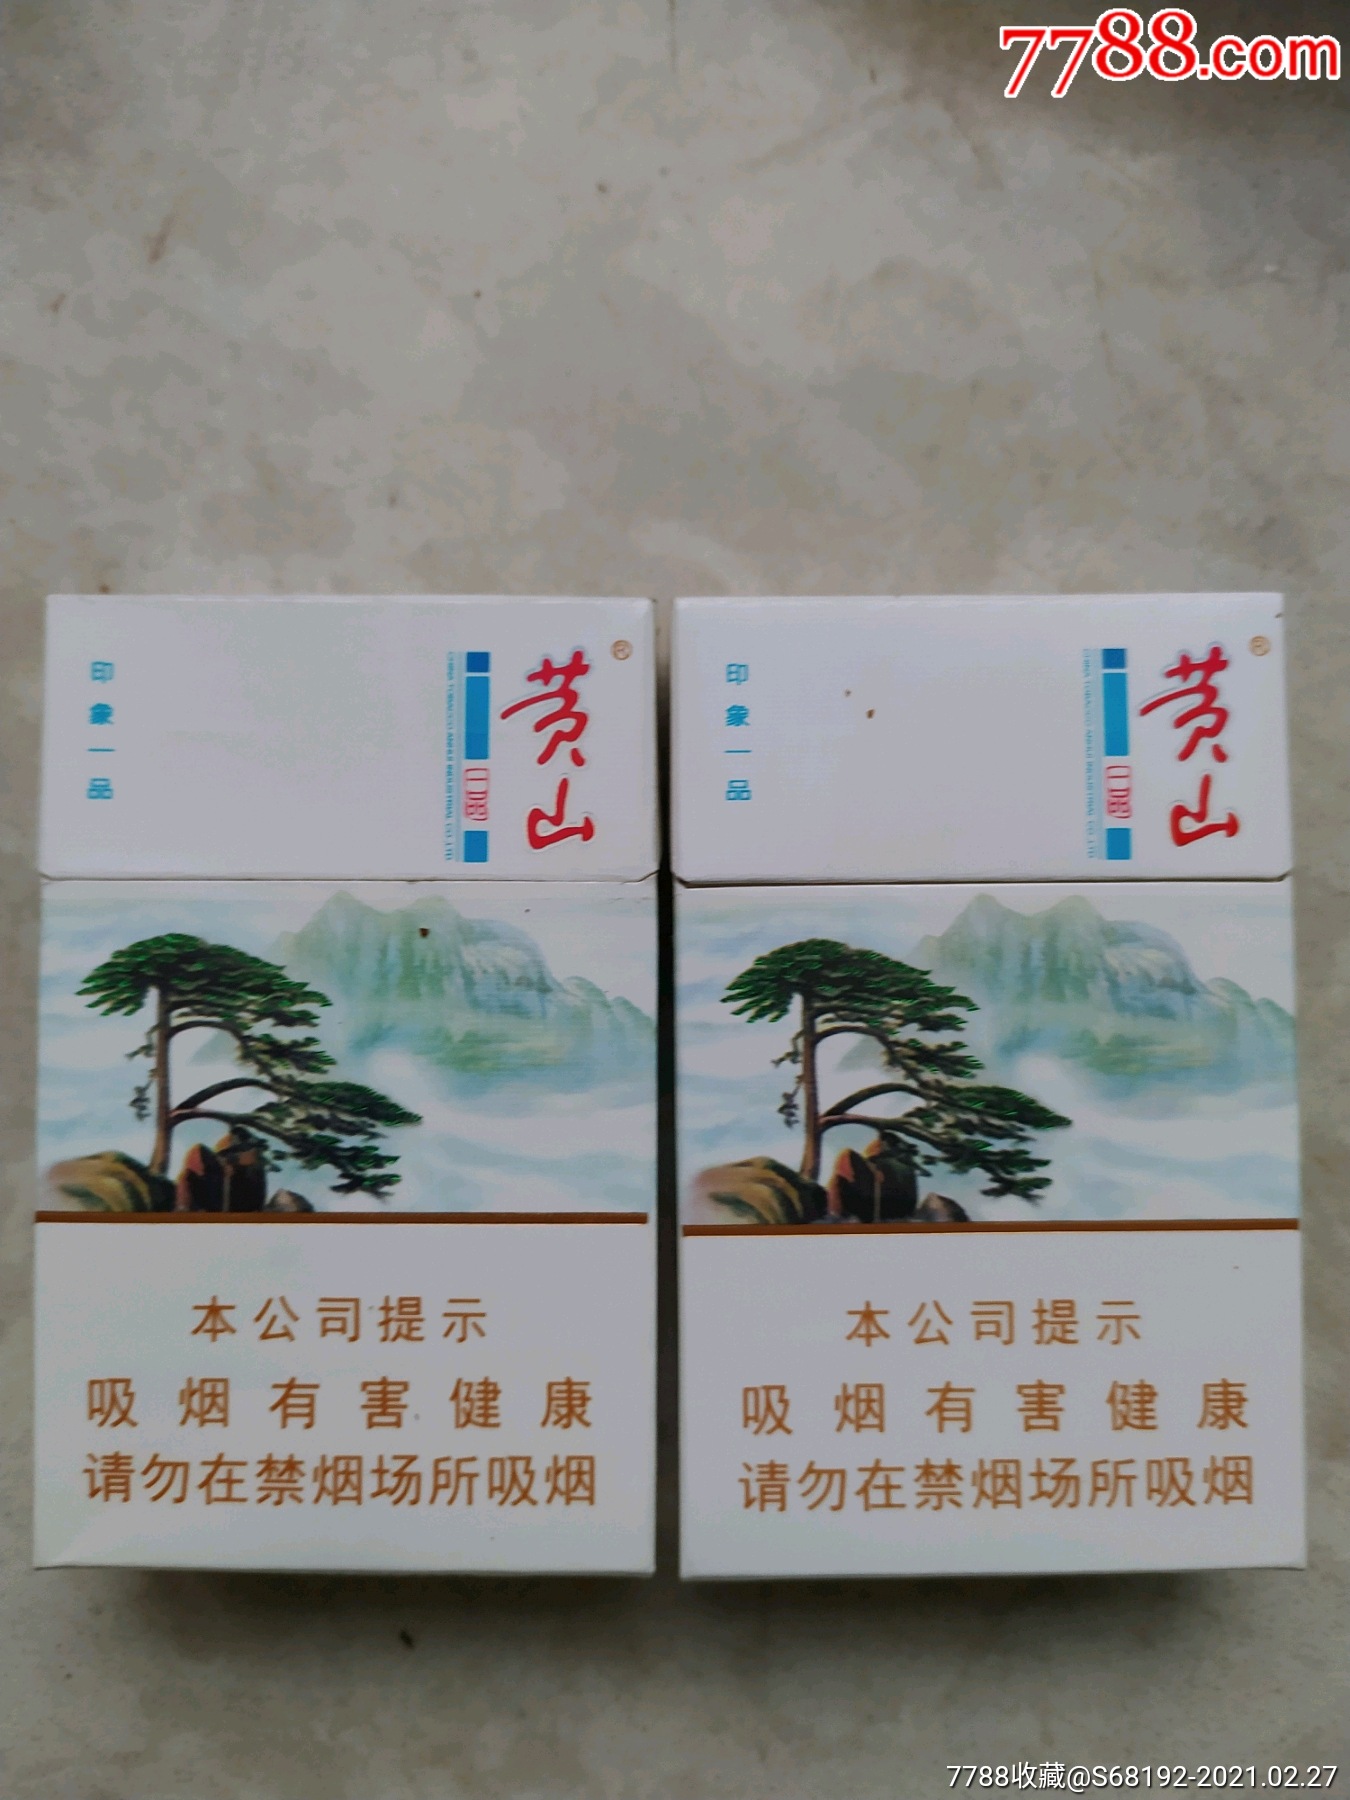 黄山(印象一品)二个-价格:3元-se78591251-烟标/烟盒